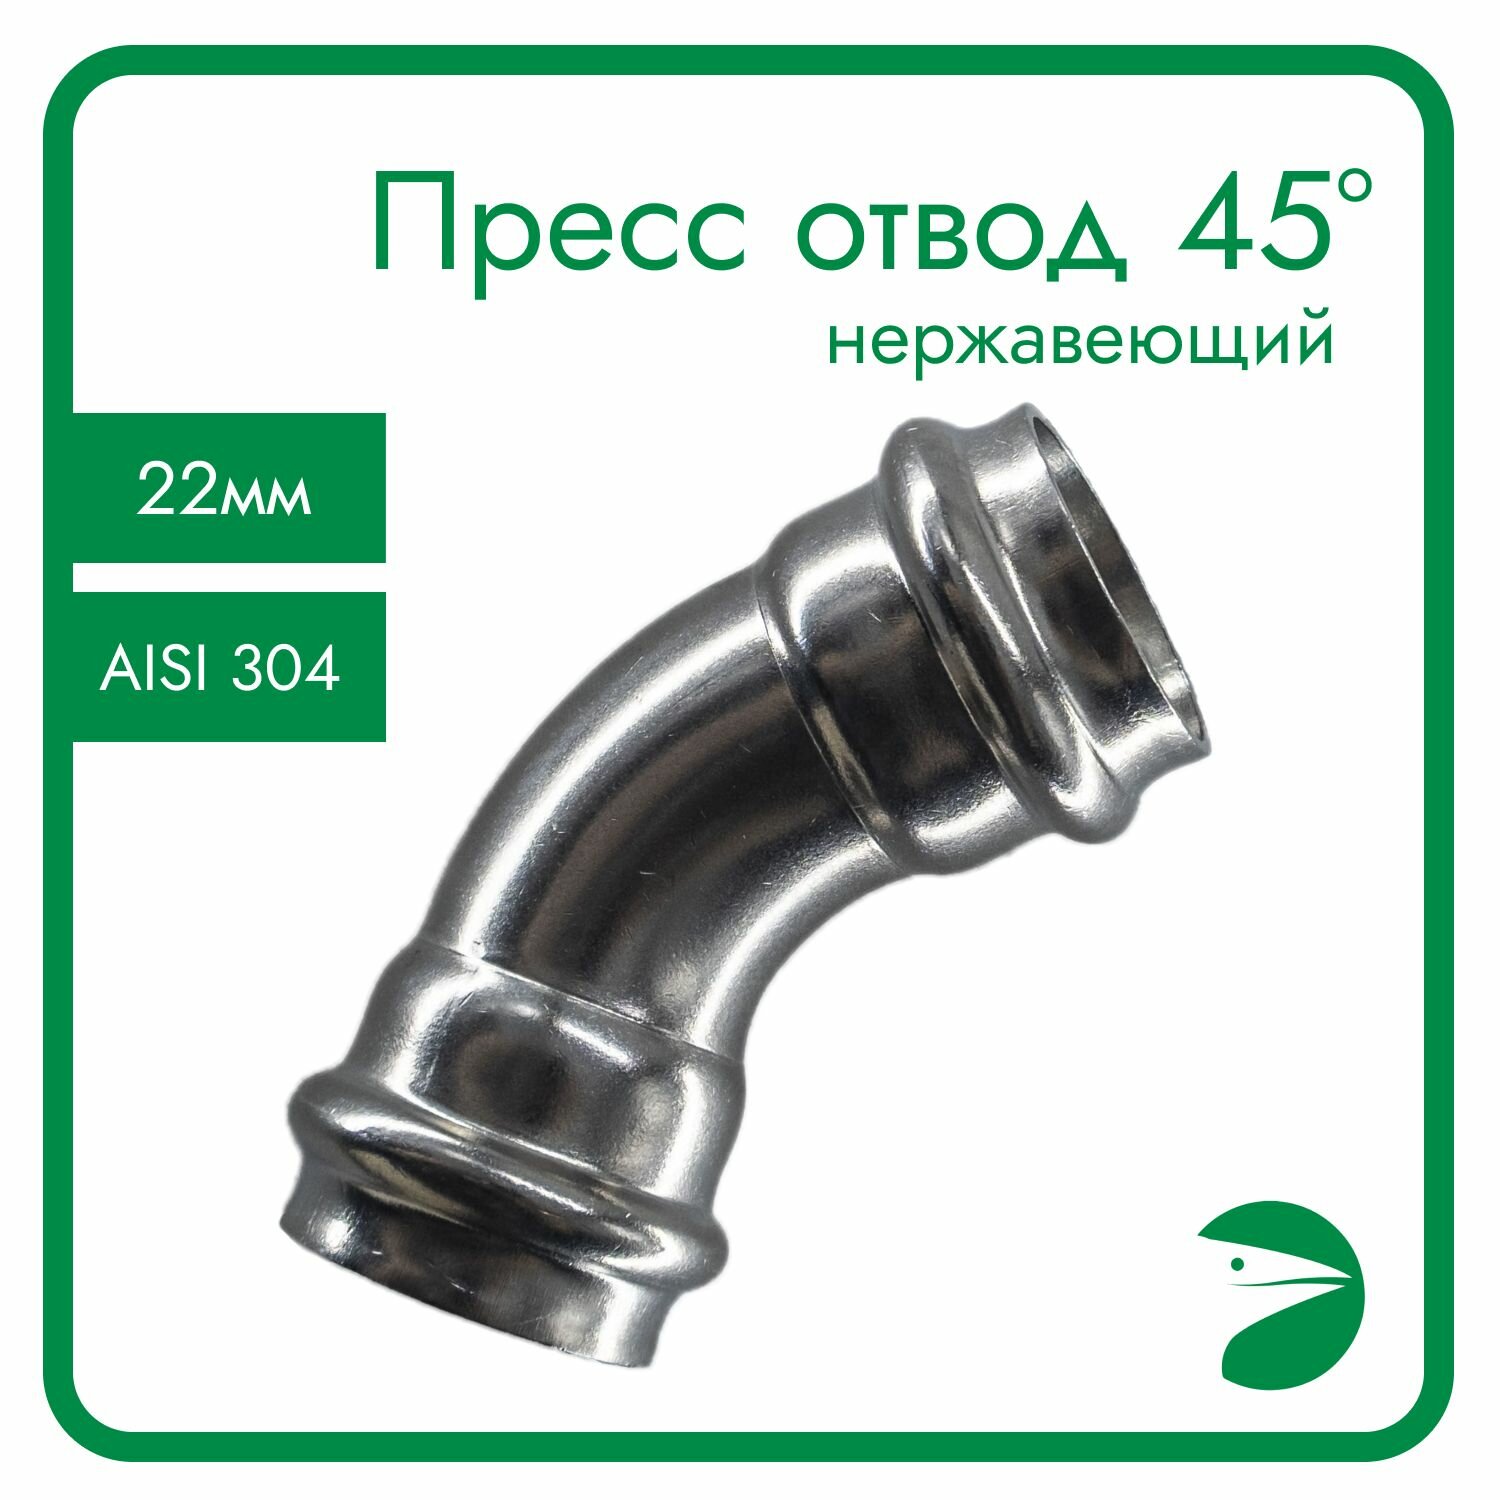 Пресс-отвод 45 нержавеющий, AISI304 22mm, CF8, PN16